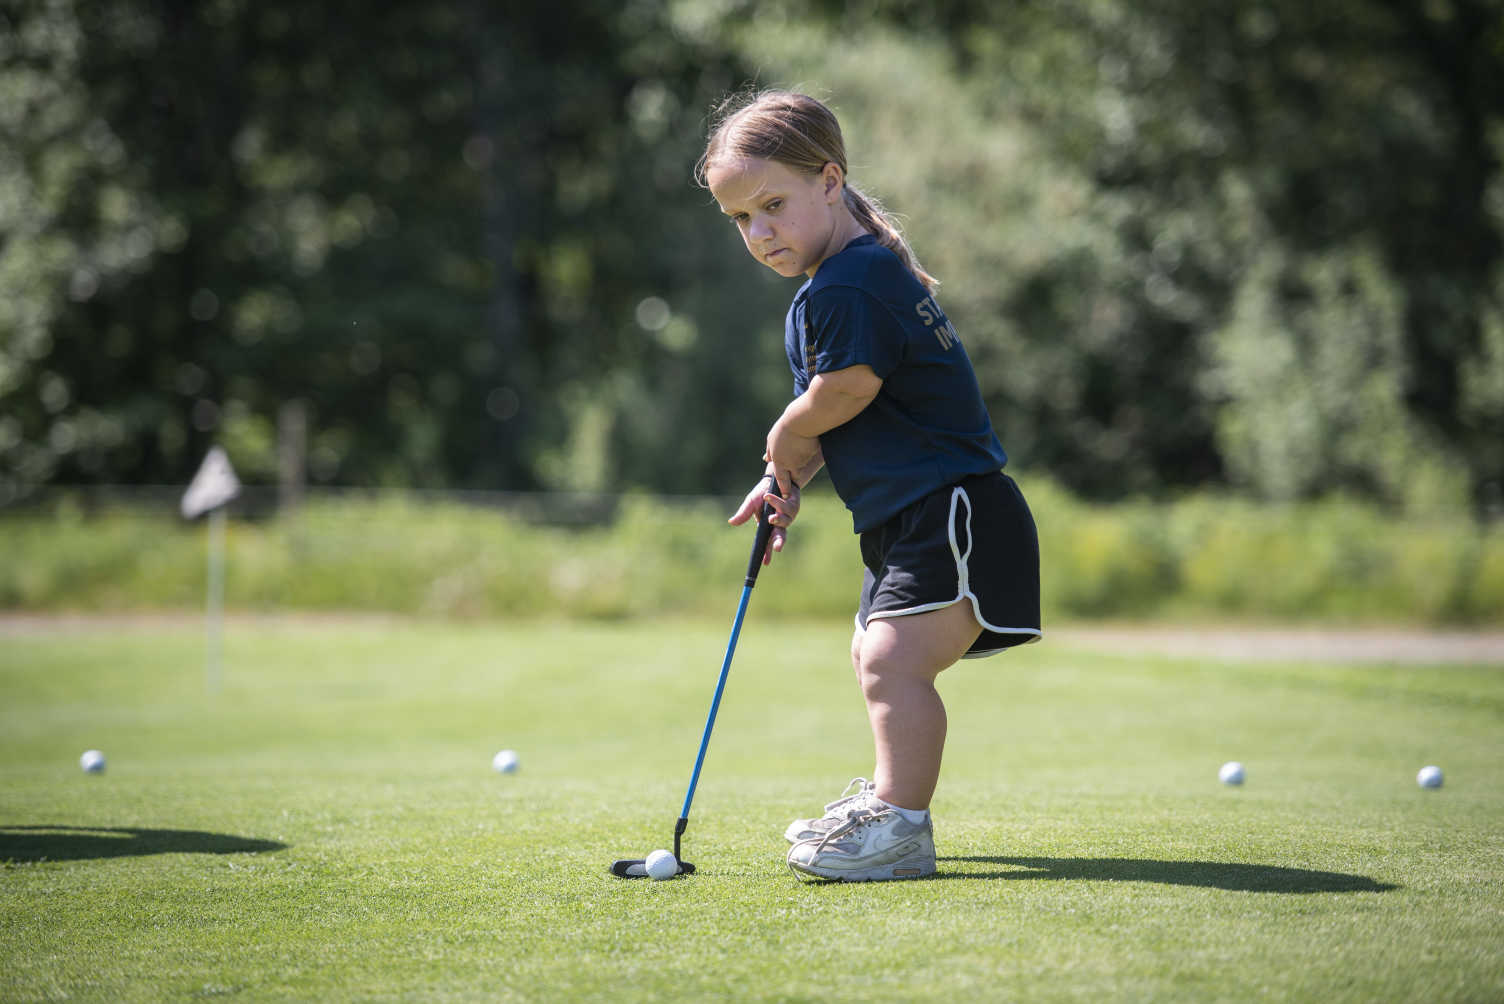 En ung tjej med kortväxthet puttar golfbollen.